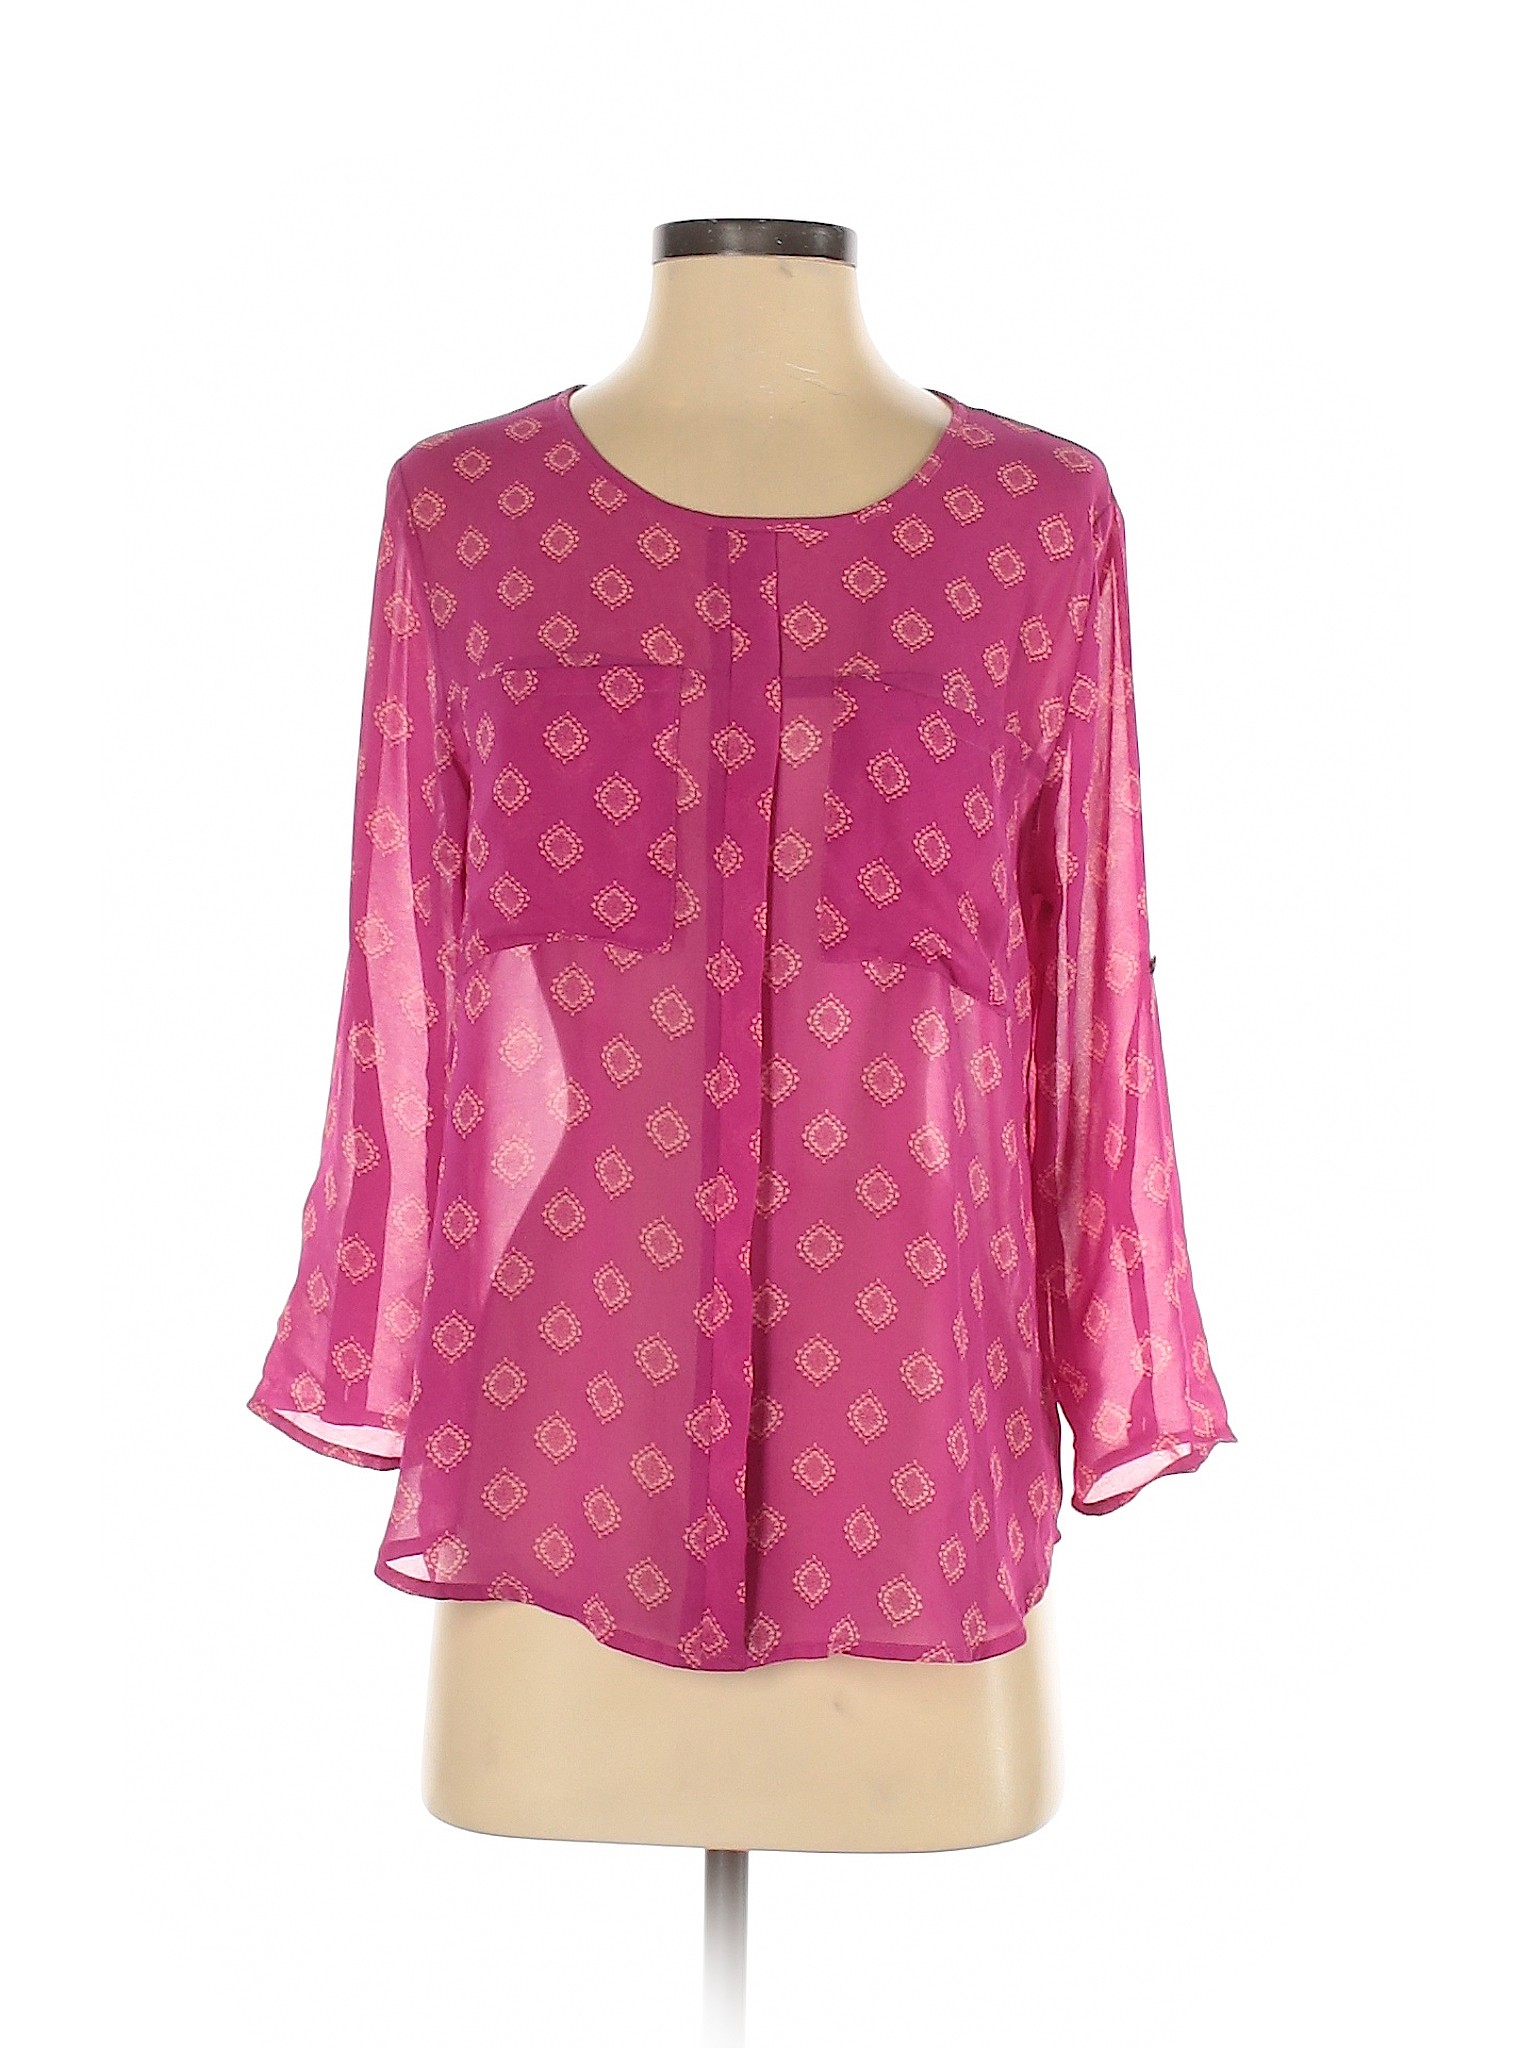 Papermoon Women Pink 3/4 Sleeve Blouse S | eBay